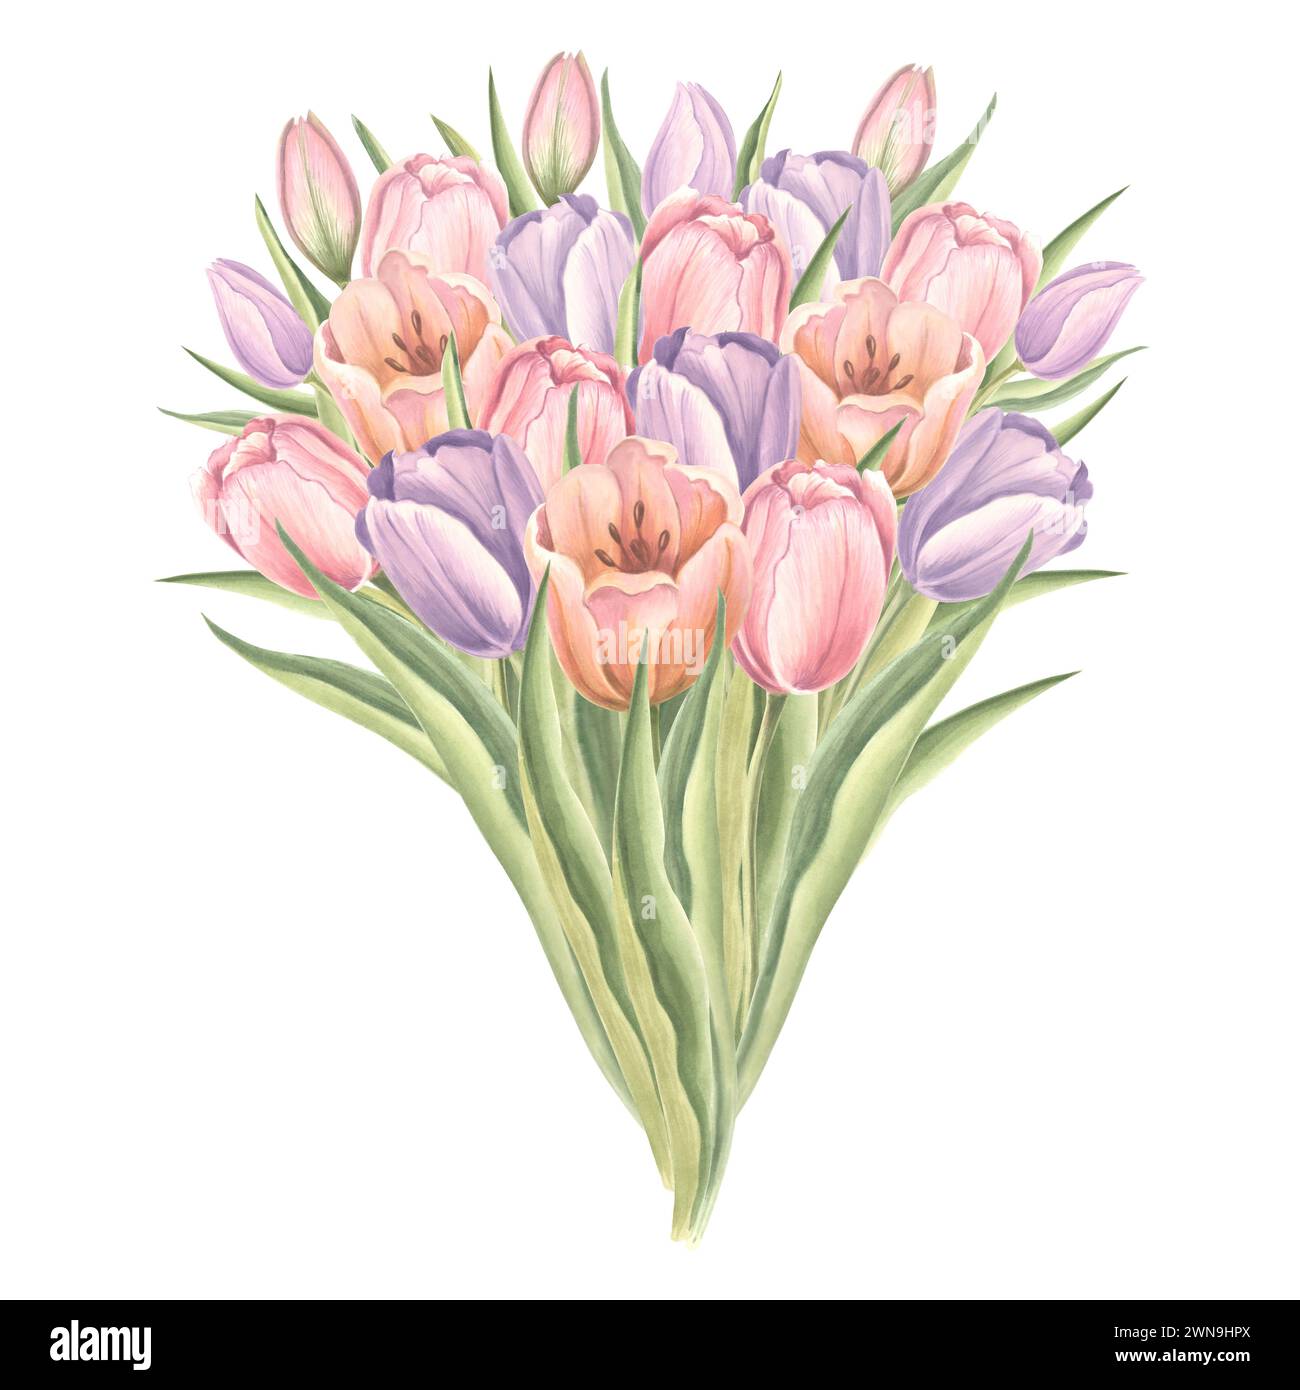 Bouquet de fleurs de tulipes avec des feuilles. Isolé illustration d'aquarelle dessinée à la main jardin fleur de printemps. Modèle de dessin floral pour carte de mères d Banque D'Images